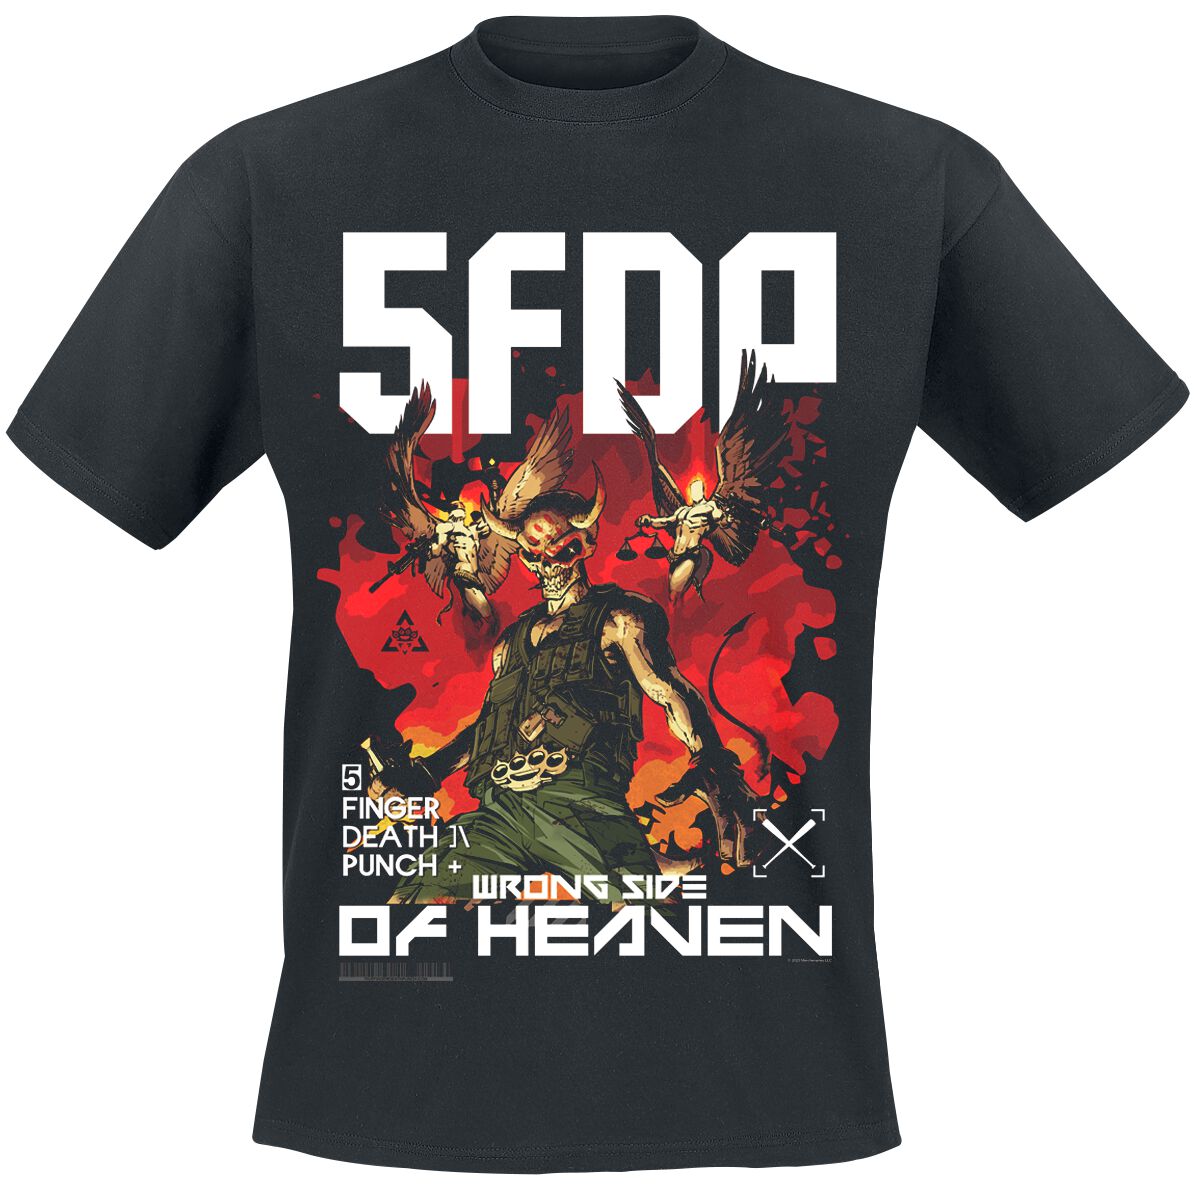 Five Finger Death Punch T-Shirt - Anniversary Wrong Side Of Heaven - S bis 3XL - für Männer - Größe S - schwarz  - Lizenziertes Merchandise!